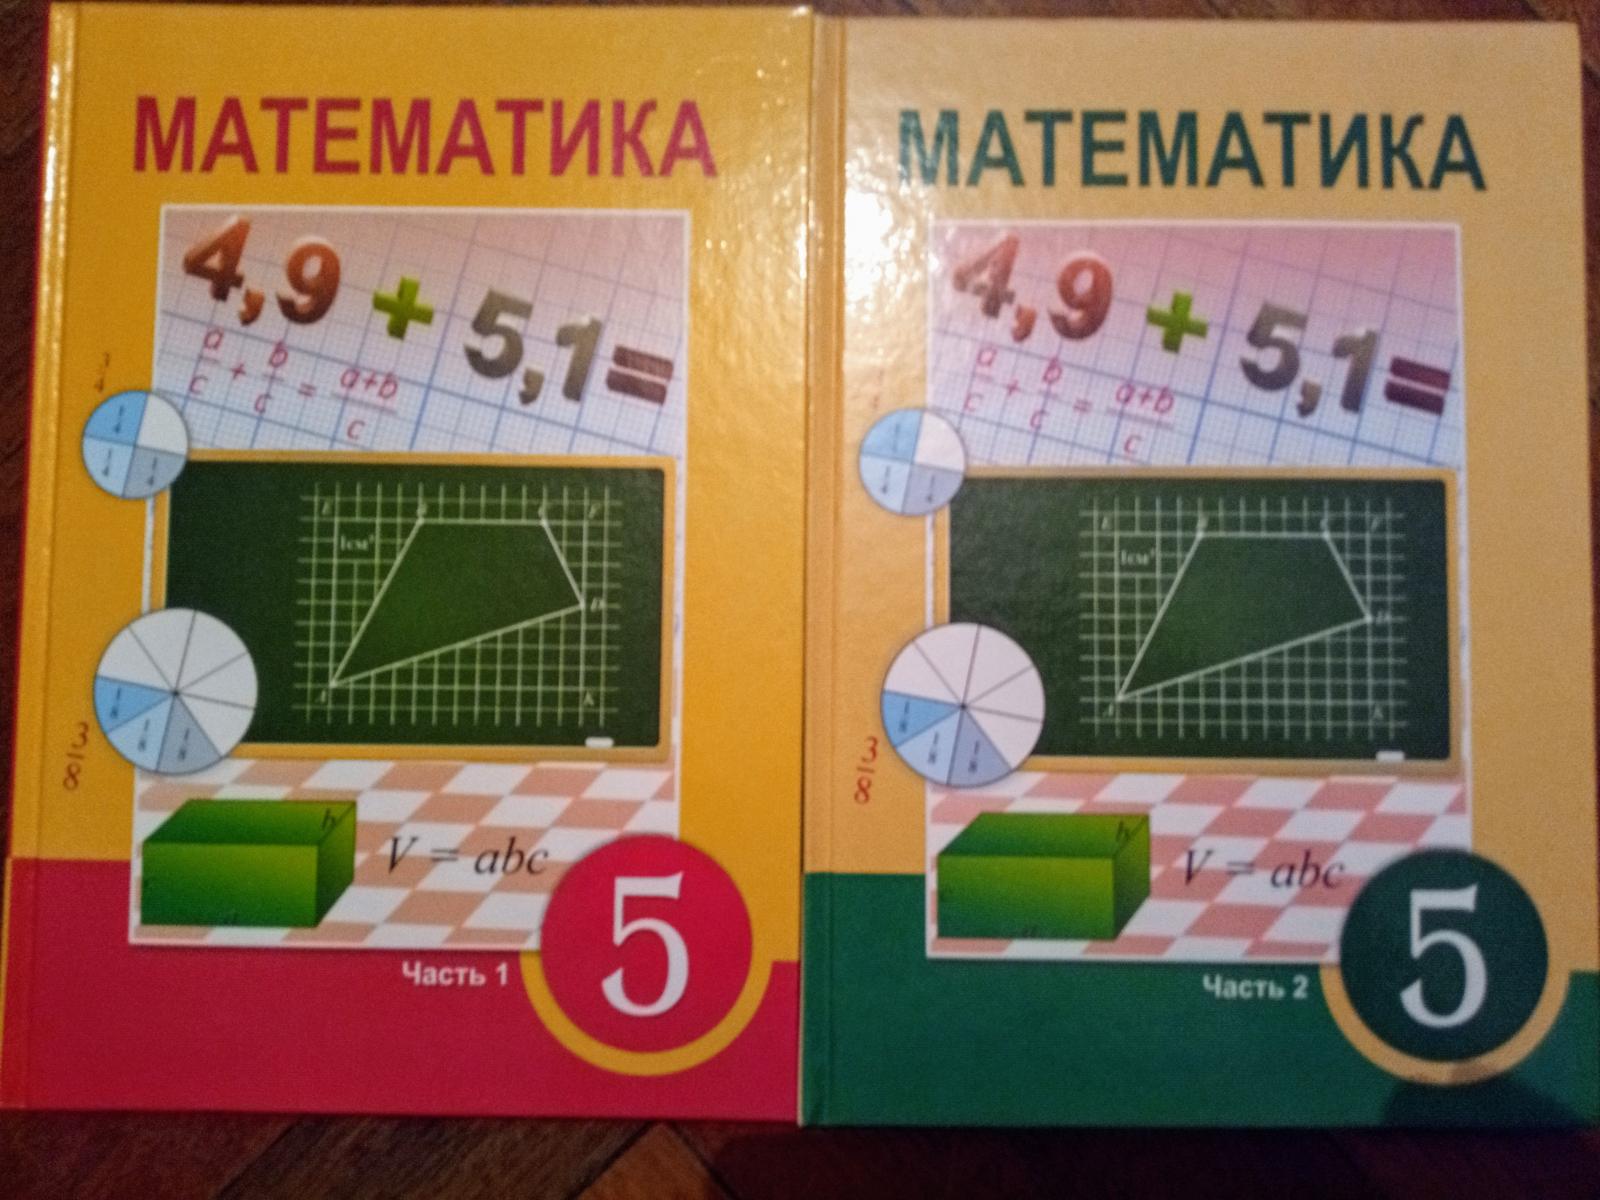 Матем 5 5.539. 2+Учебники+атамура. Матем 5 кл 2 часть 5.511. Математика 6 класс атамура 2006 год. Матем 5.510.